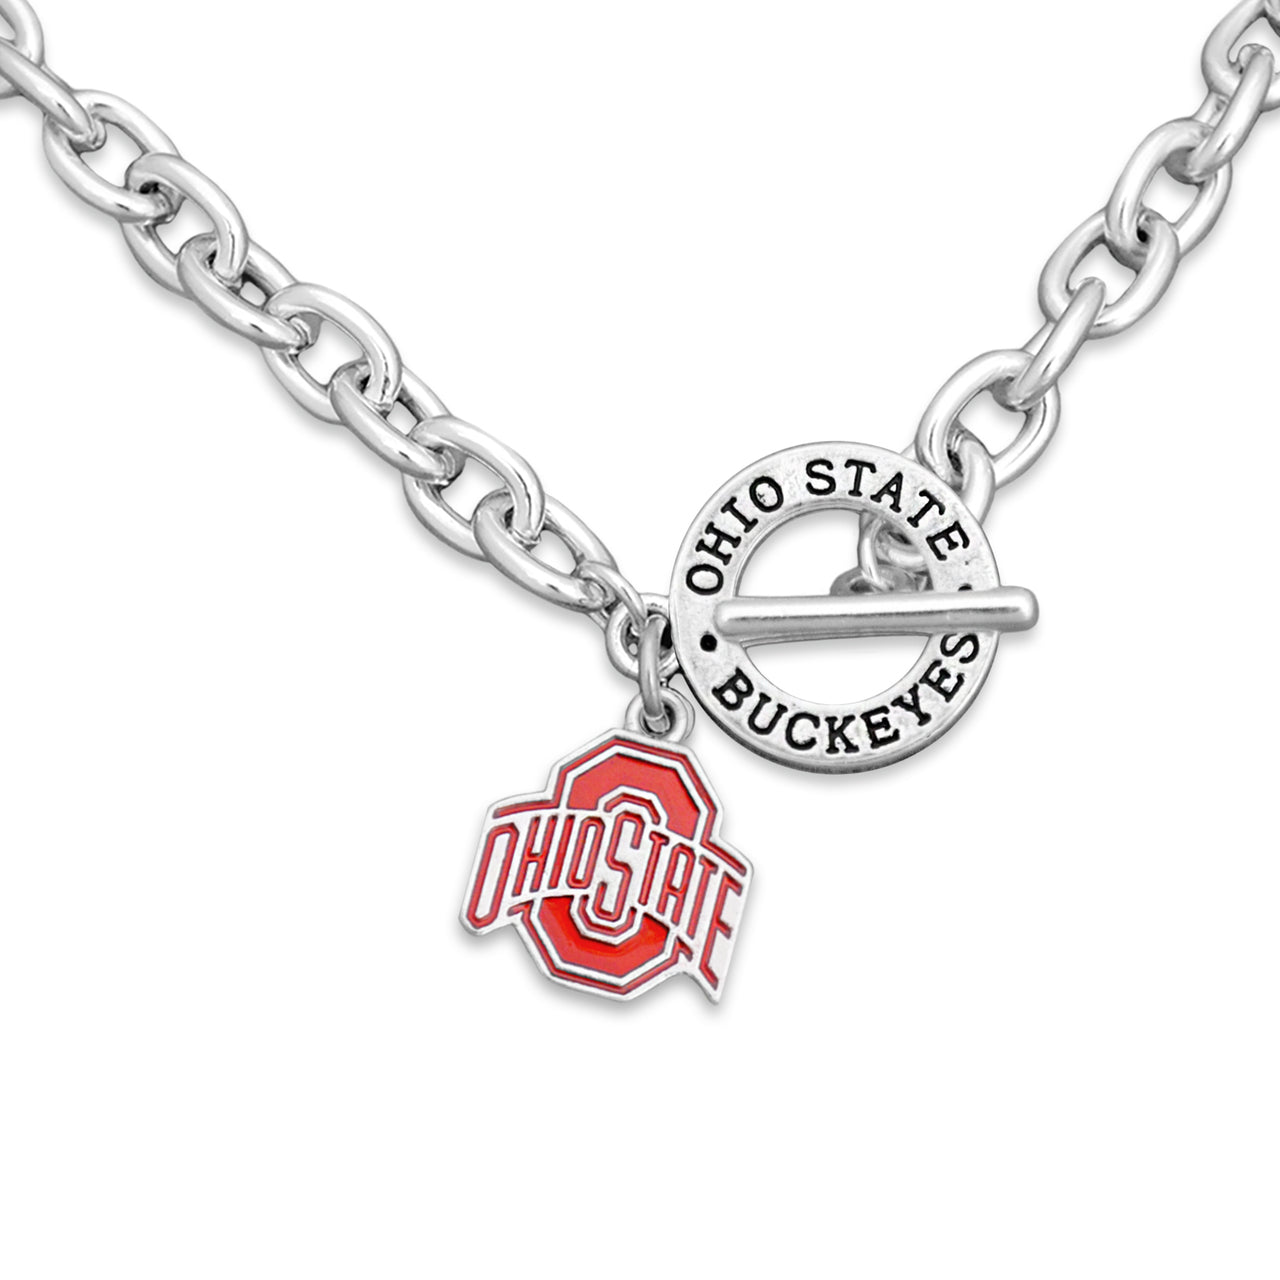 Ohio State University Logo charm necklace